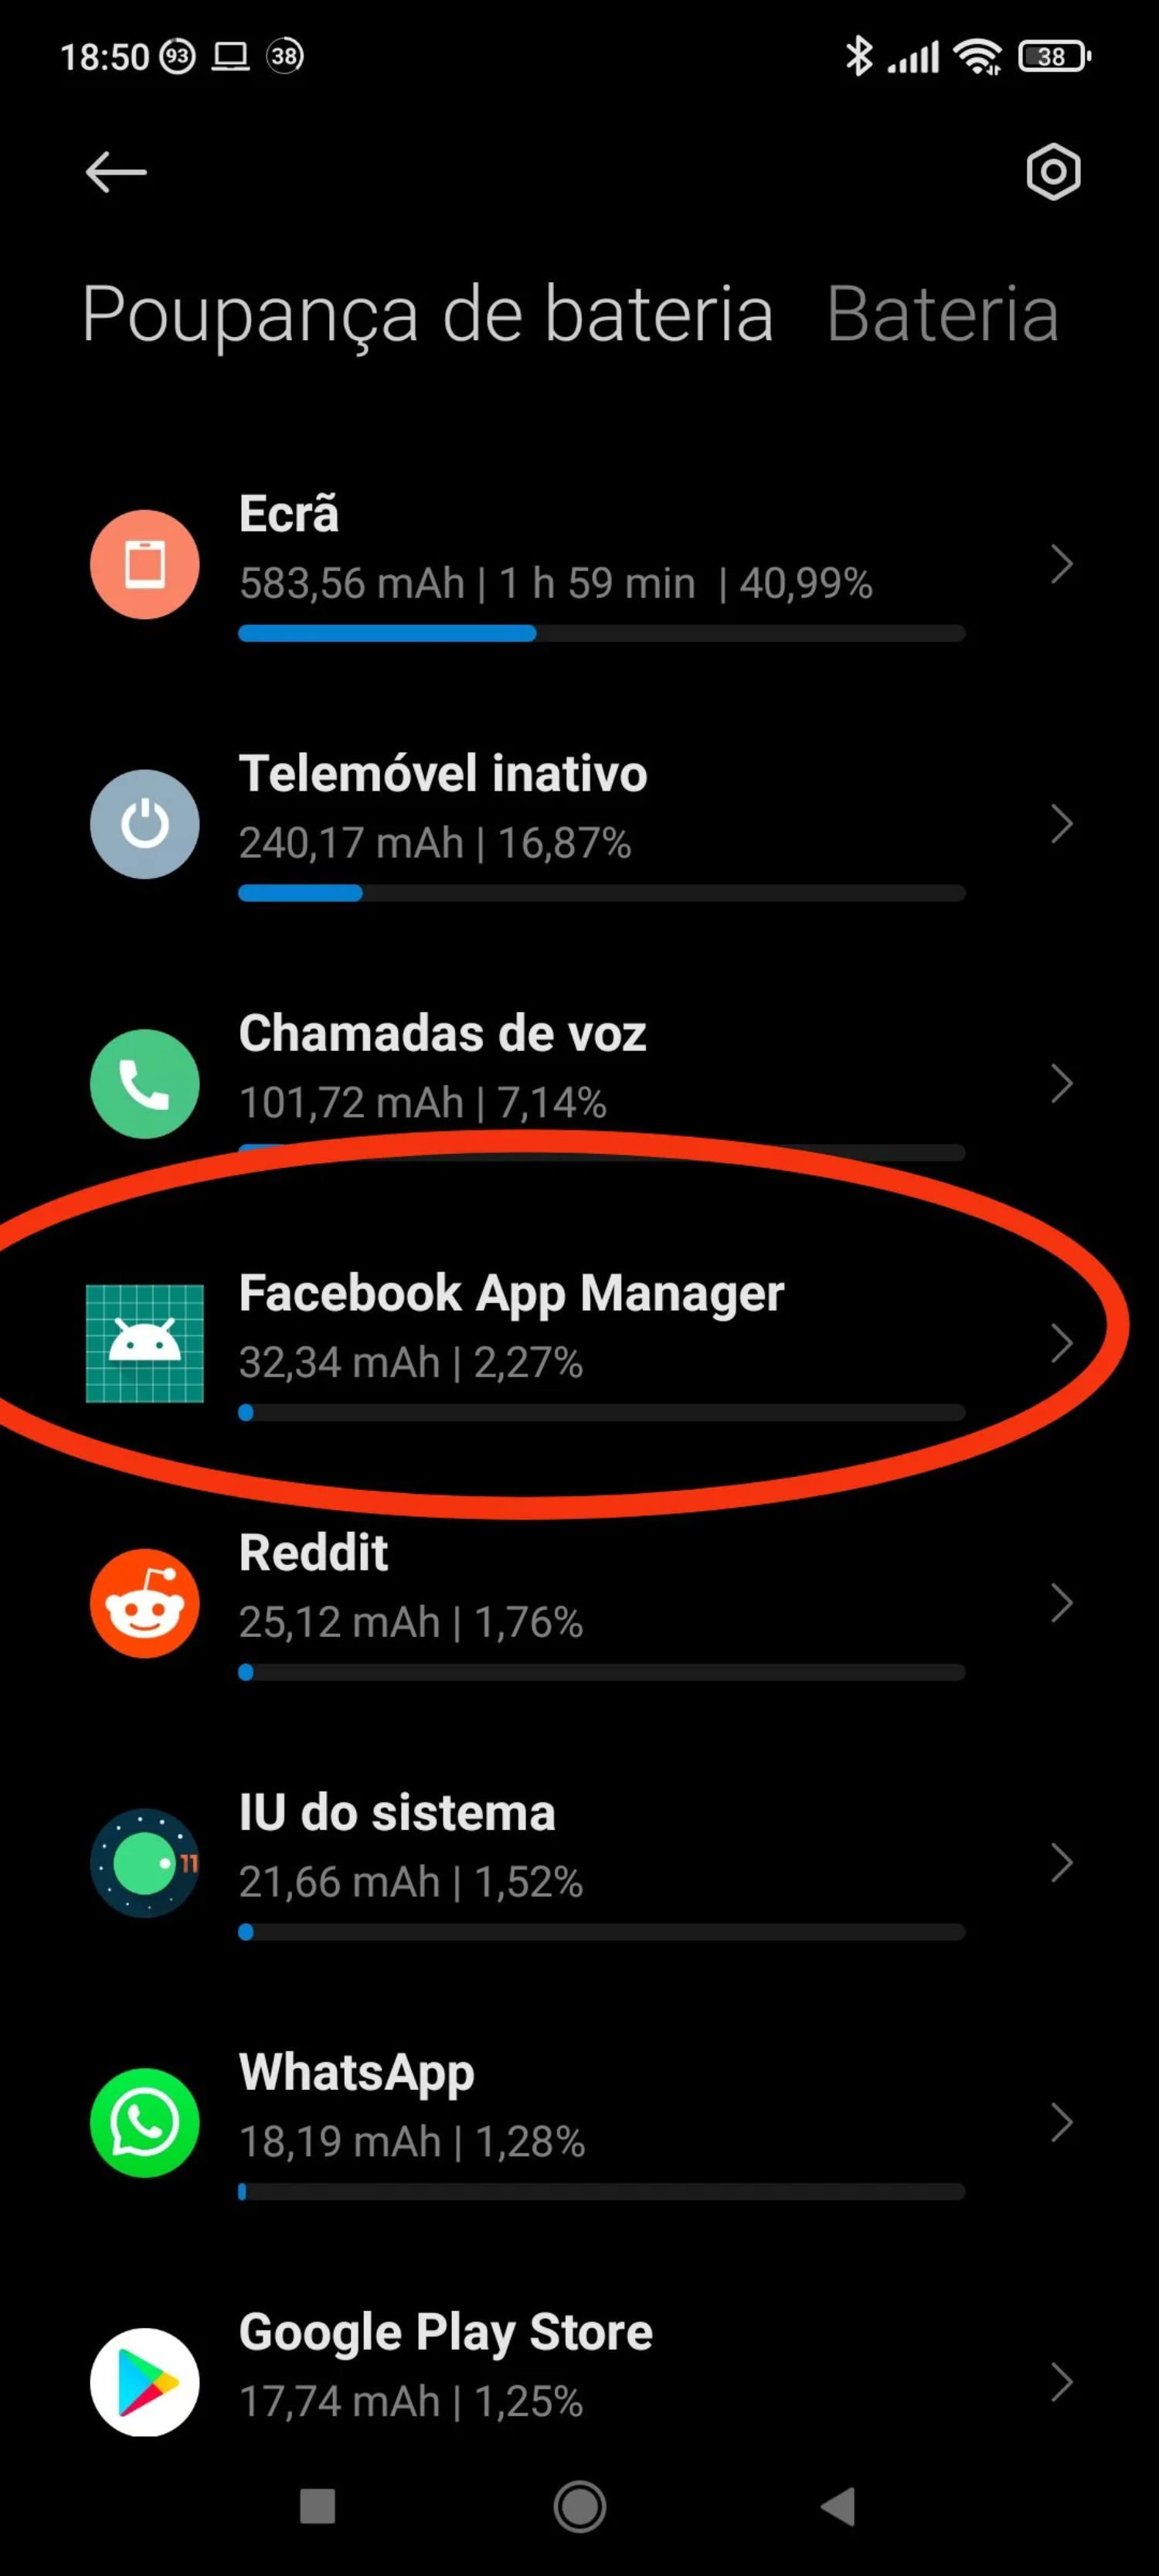 facebook app manager